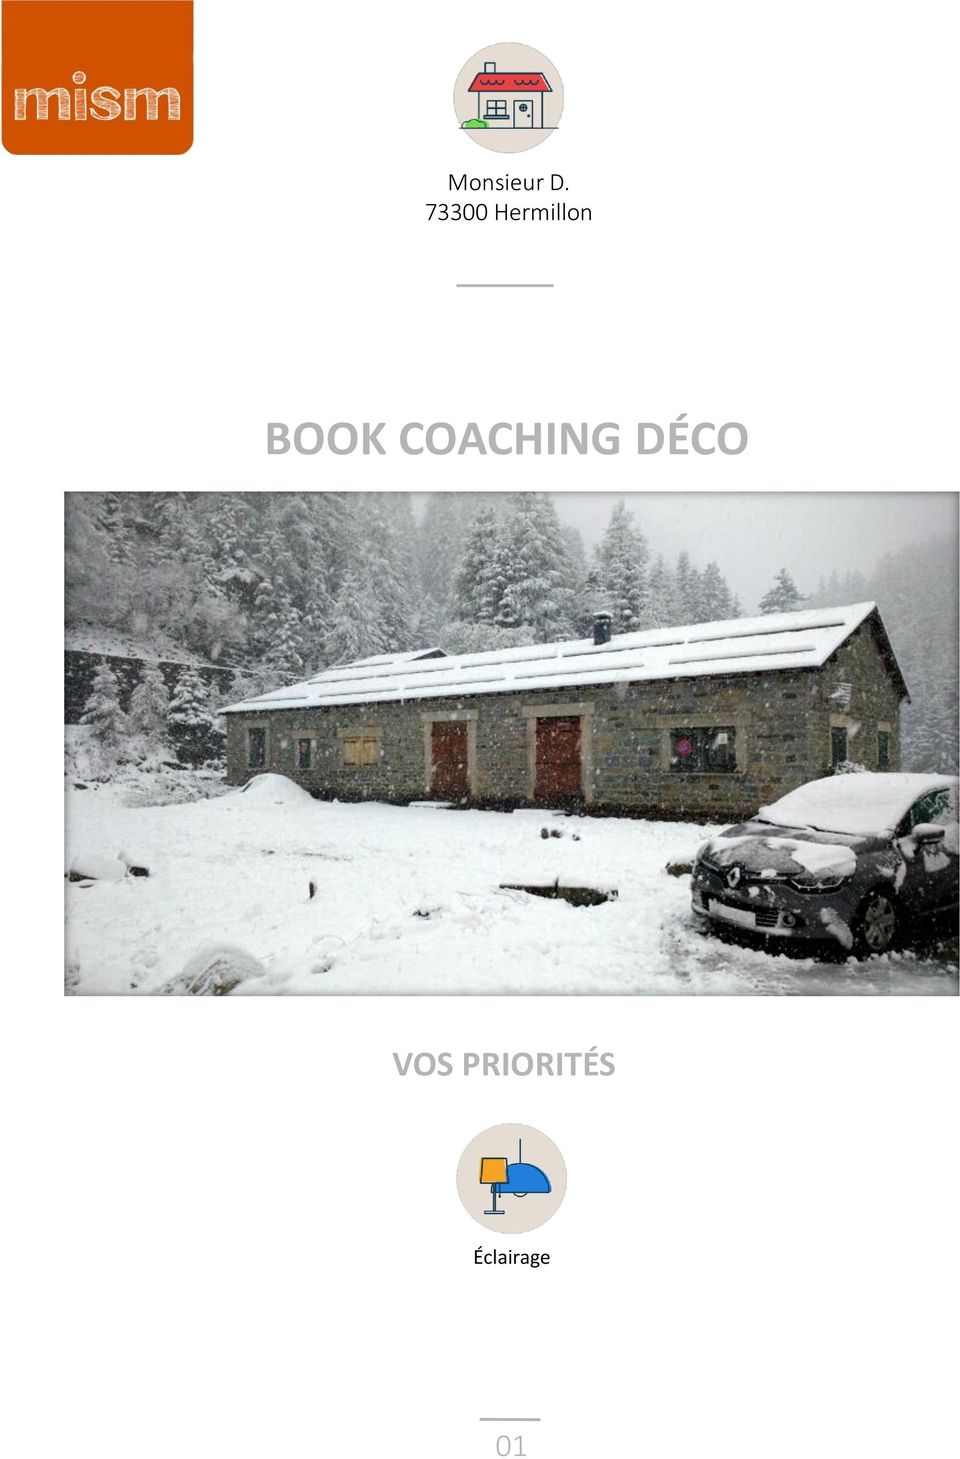 BOOK COACHING DÉCO